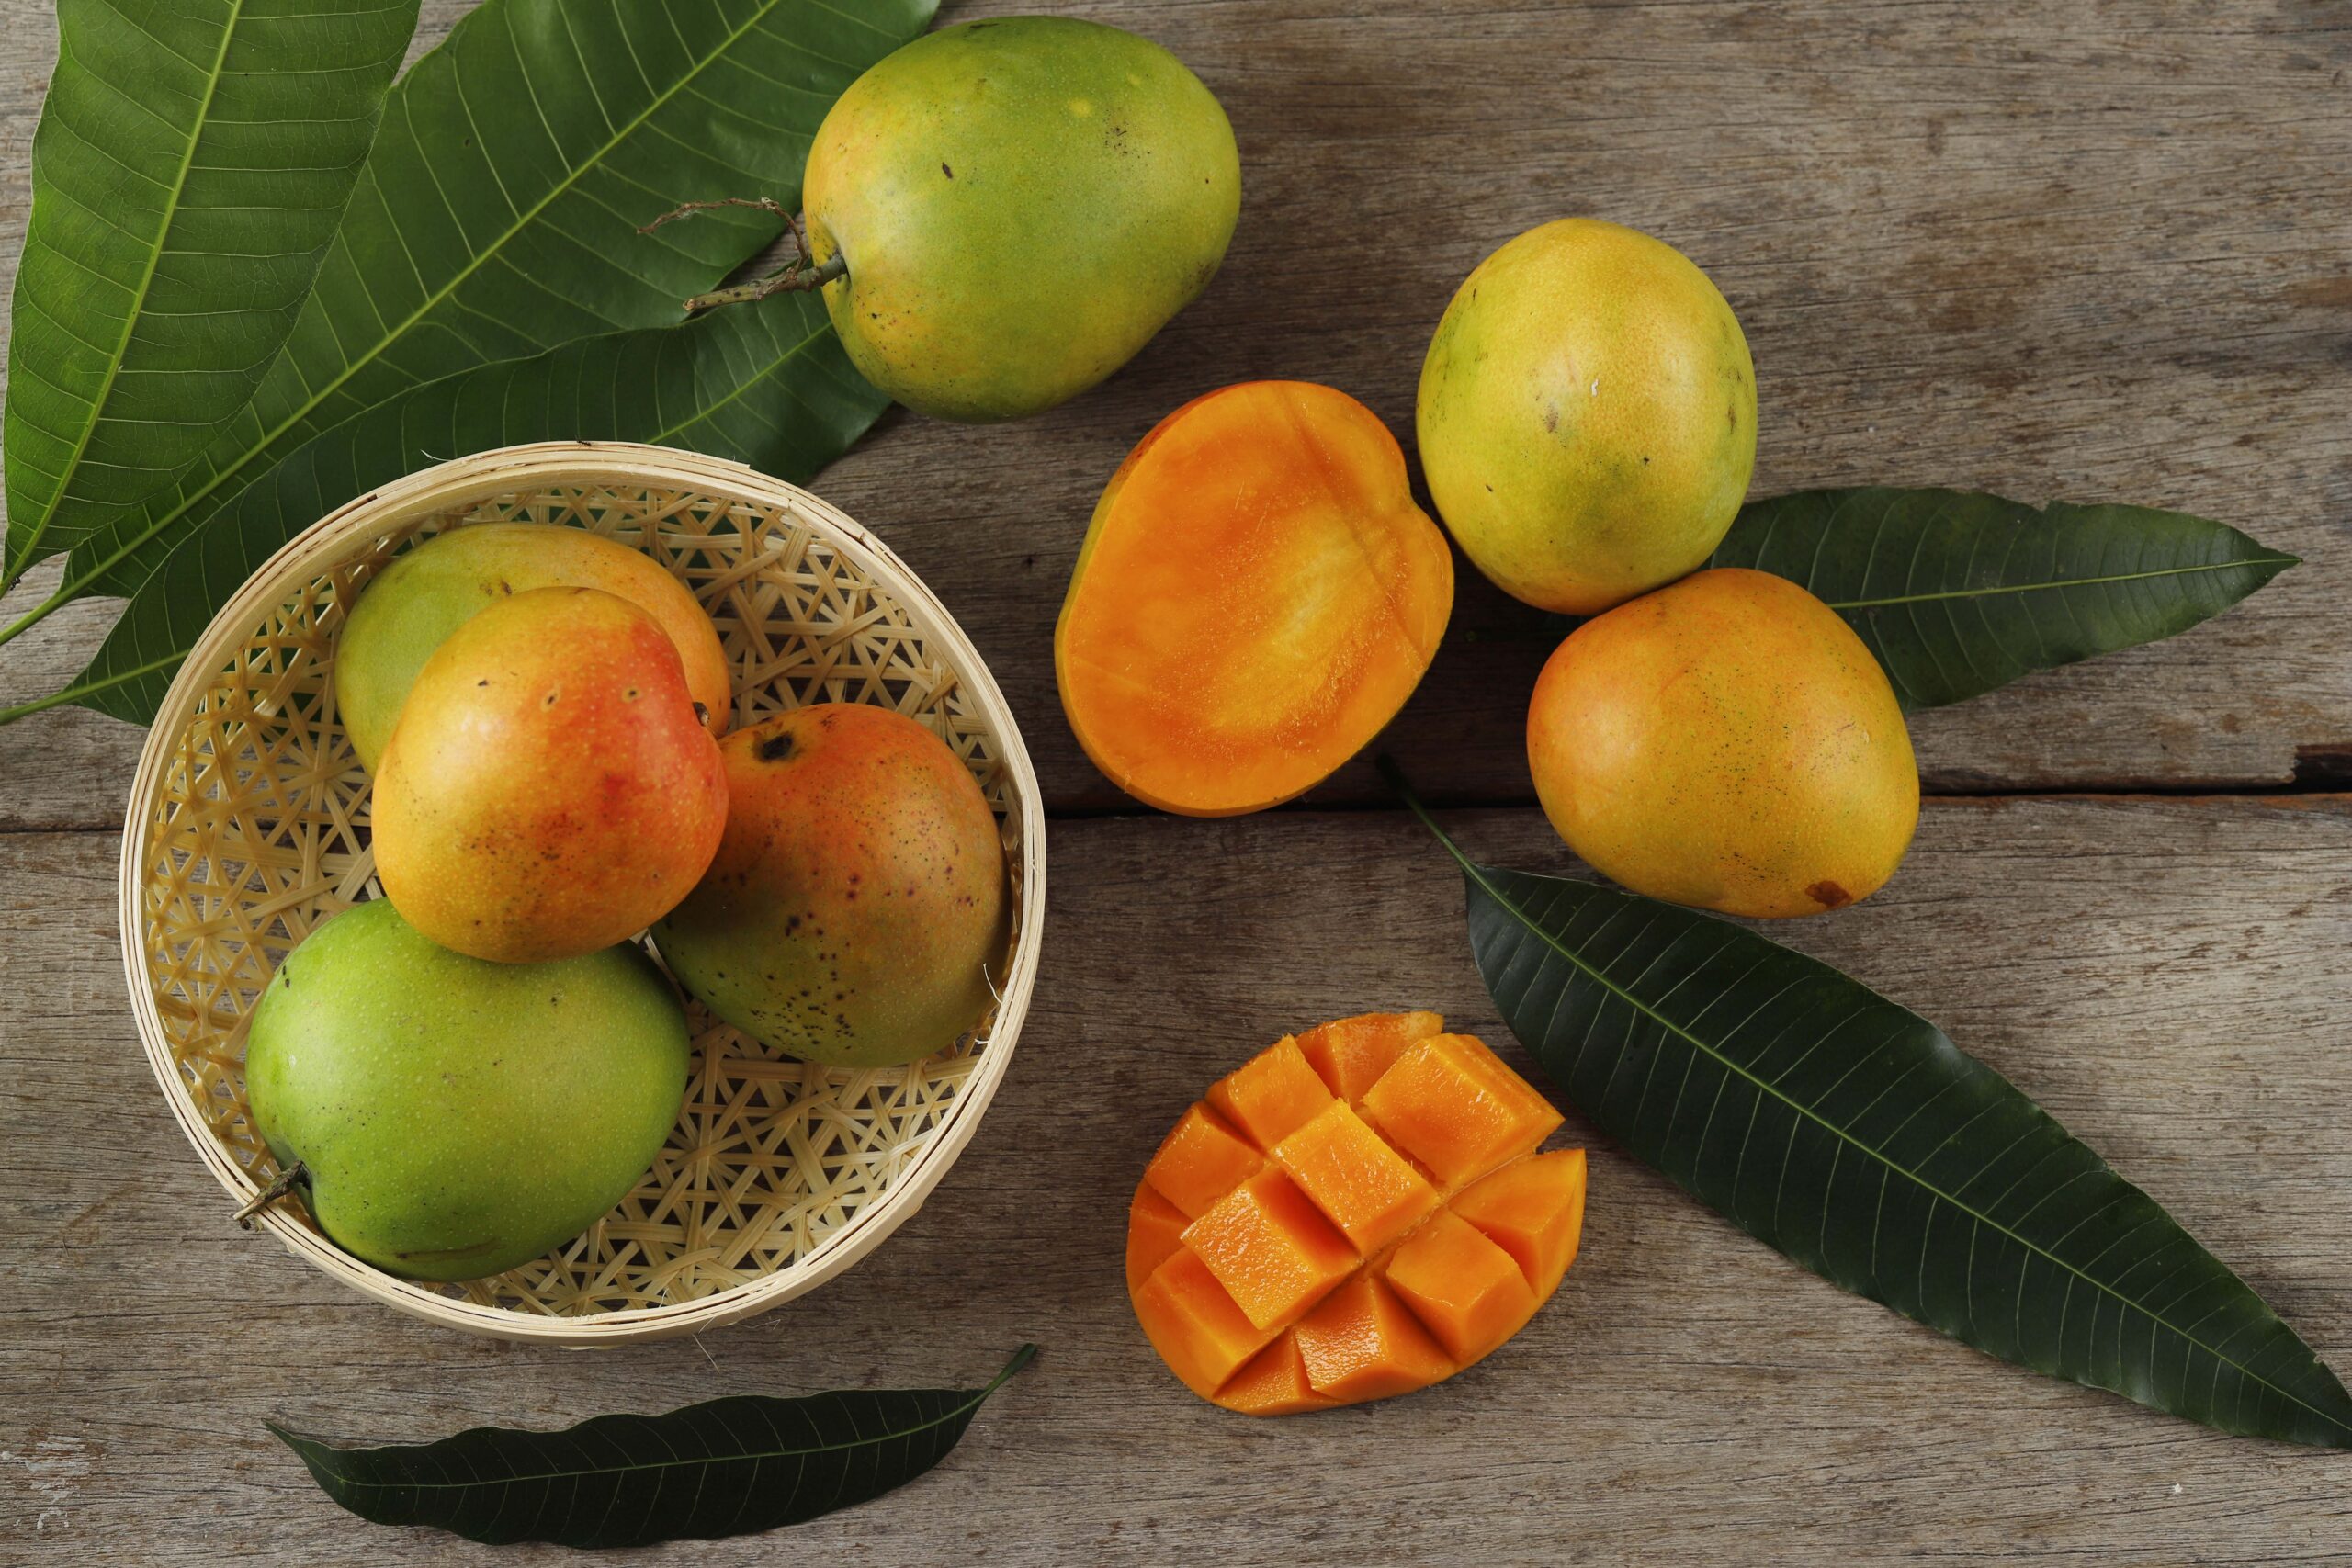 Spanish mango | https://fruitsauction.com/